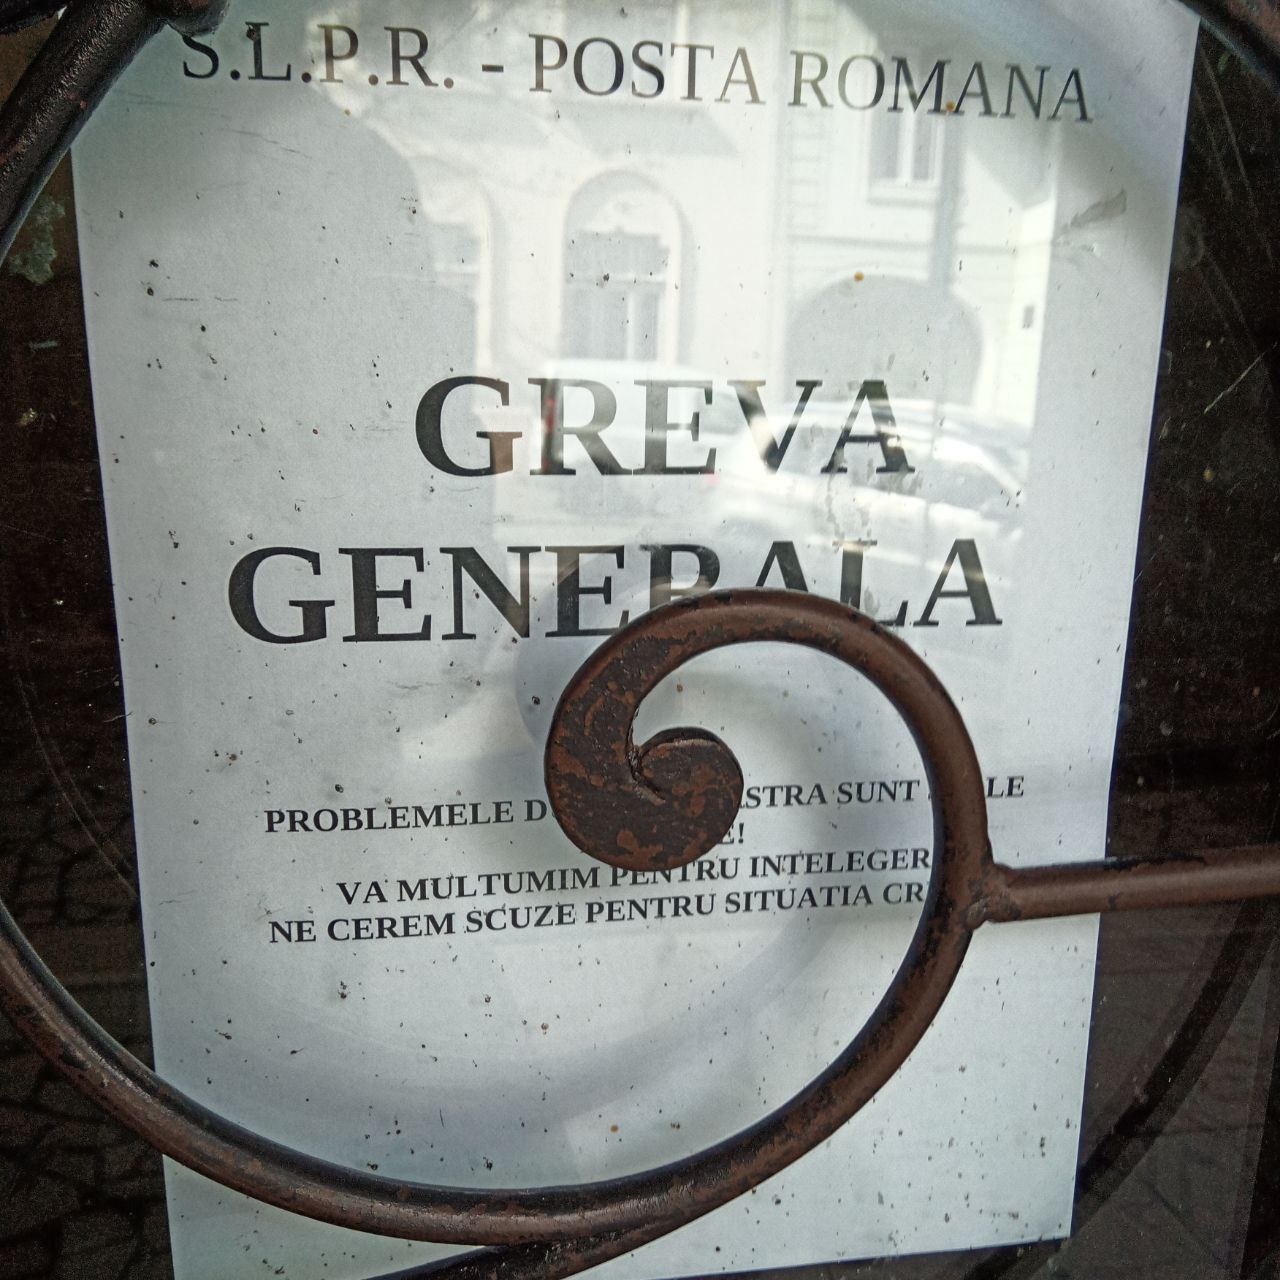 După două zile de grevă generală, Poșta Română și-a reluat activitatea. Comunicatele SLPR